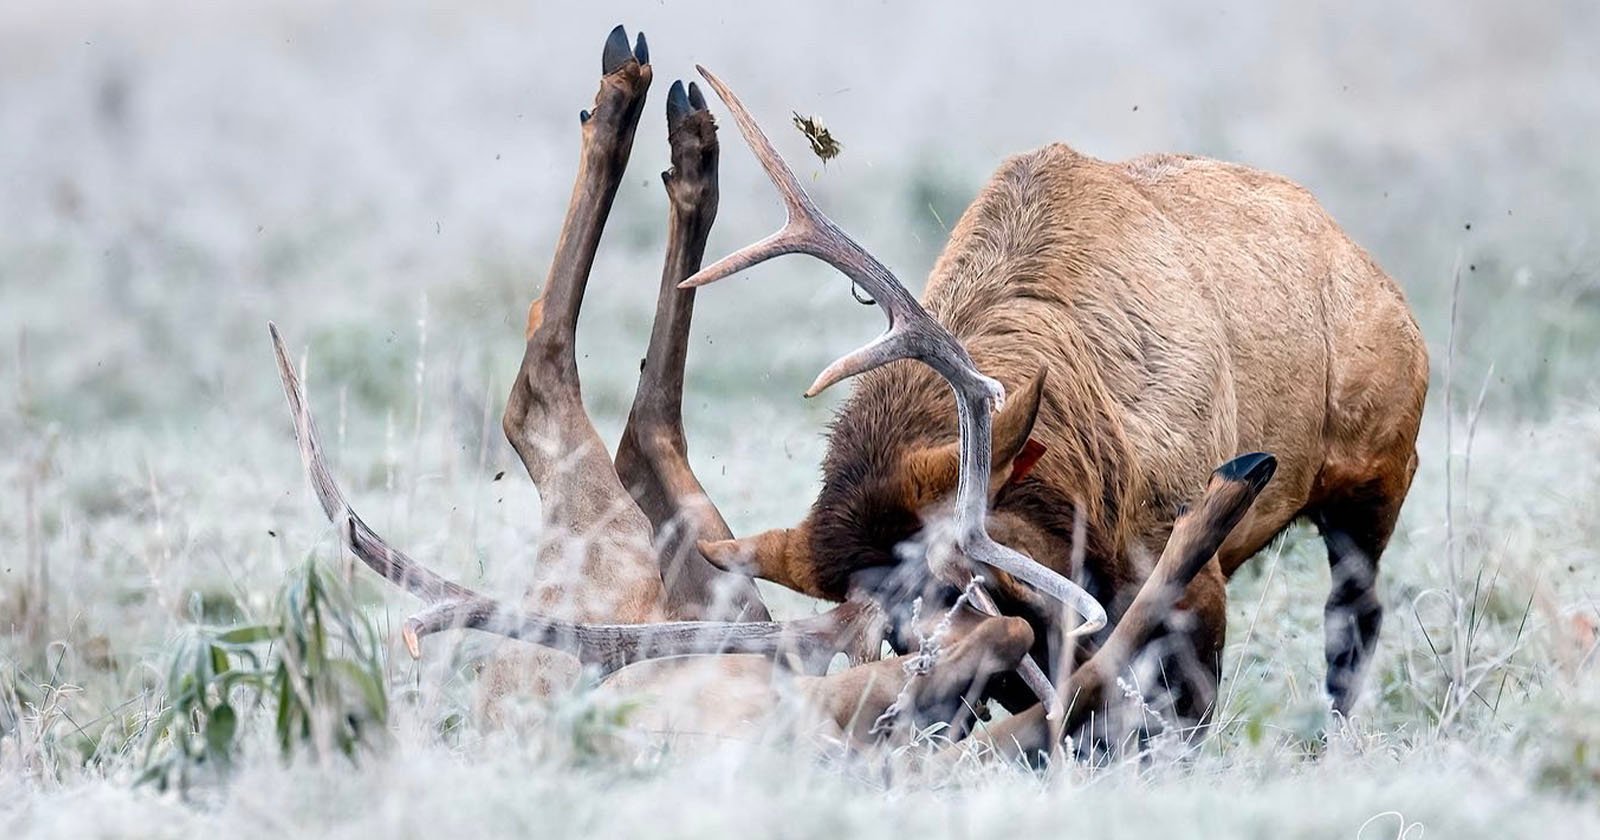  photographer shares brutal elk attack warns people not 